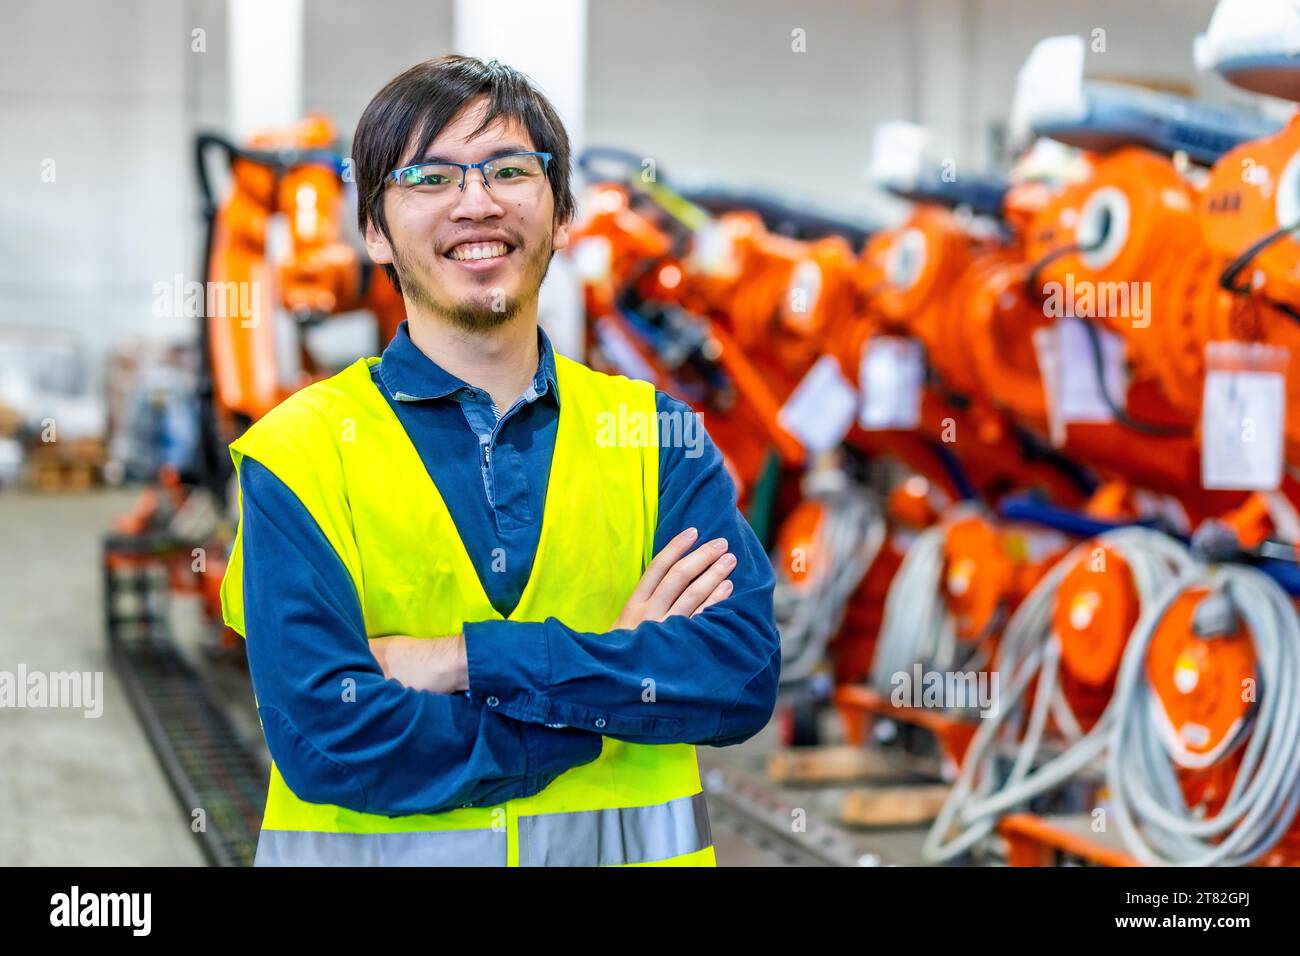 Fier ingénieur en chef japonais d'une industrie robotique debout avec les bras croisés à côté de la chaîne d'assemblage Banque D'Images